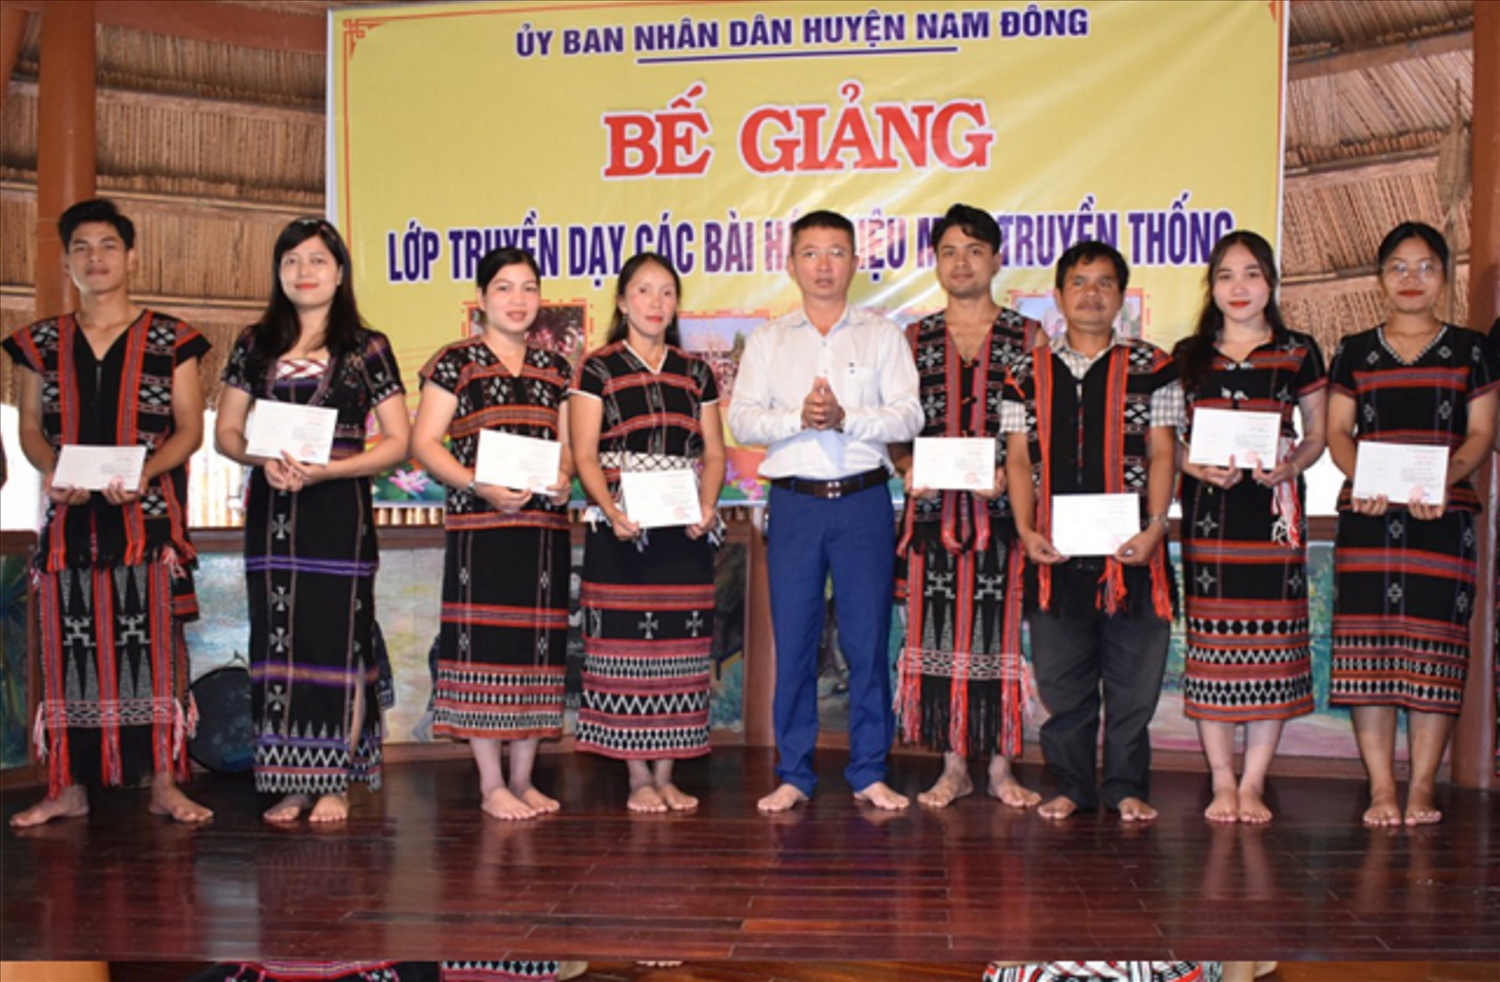 Trao chứng nhận tại lớp dạy múa tung tung da dá cho học viên ở huyện Nam Đông